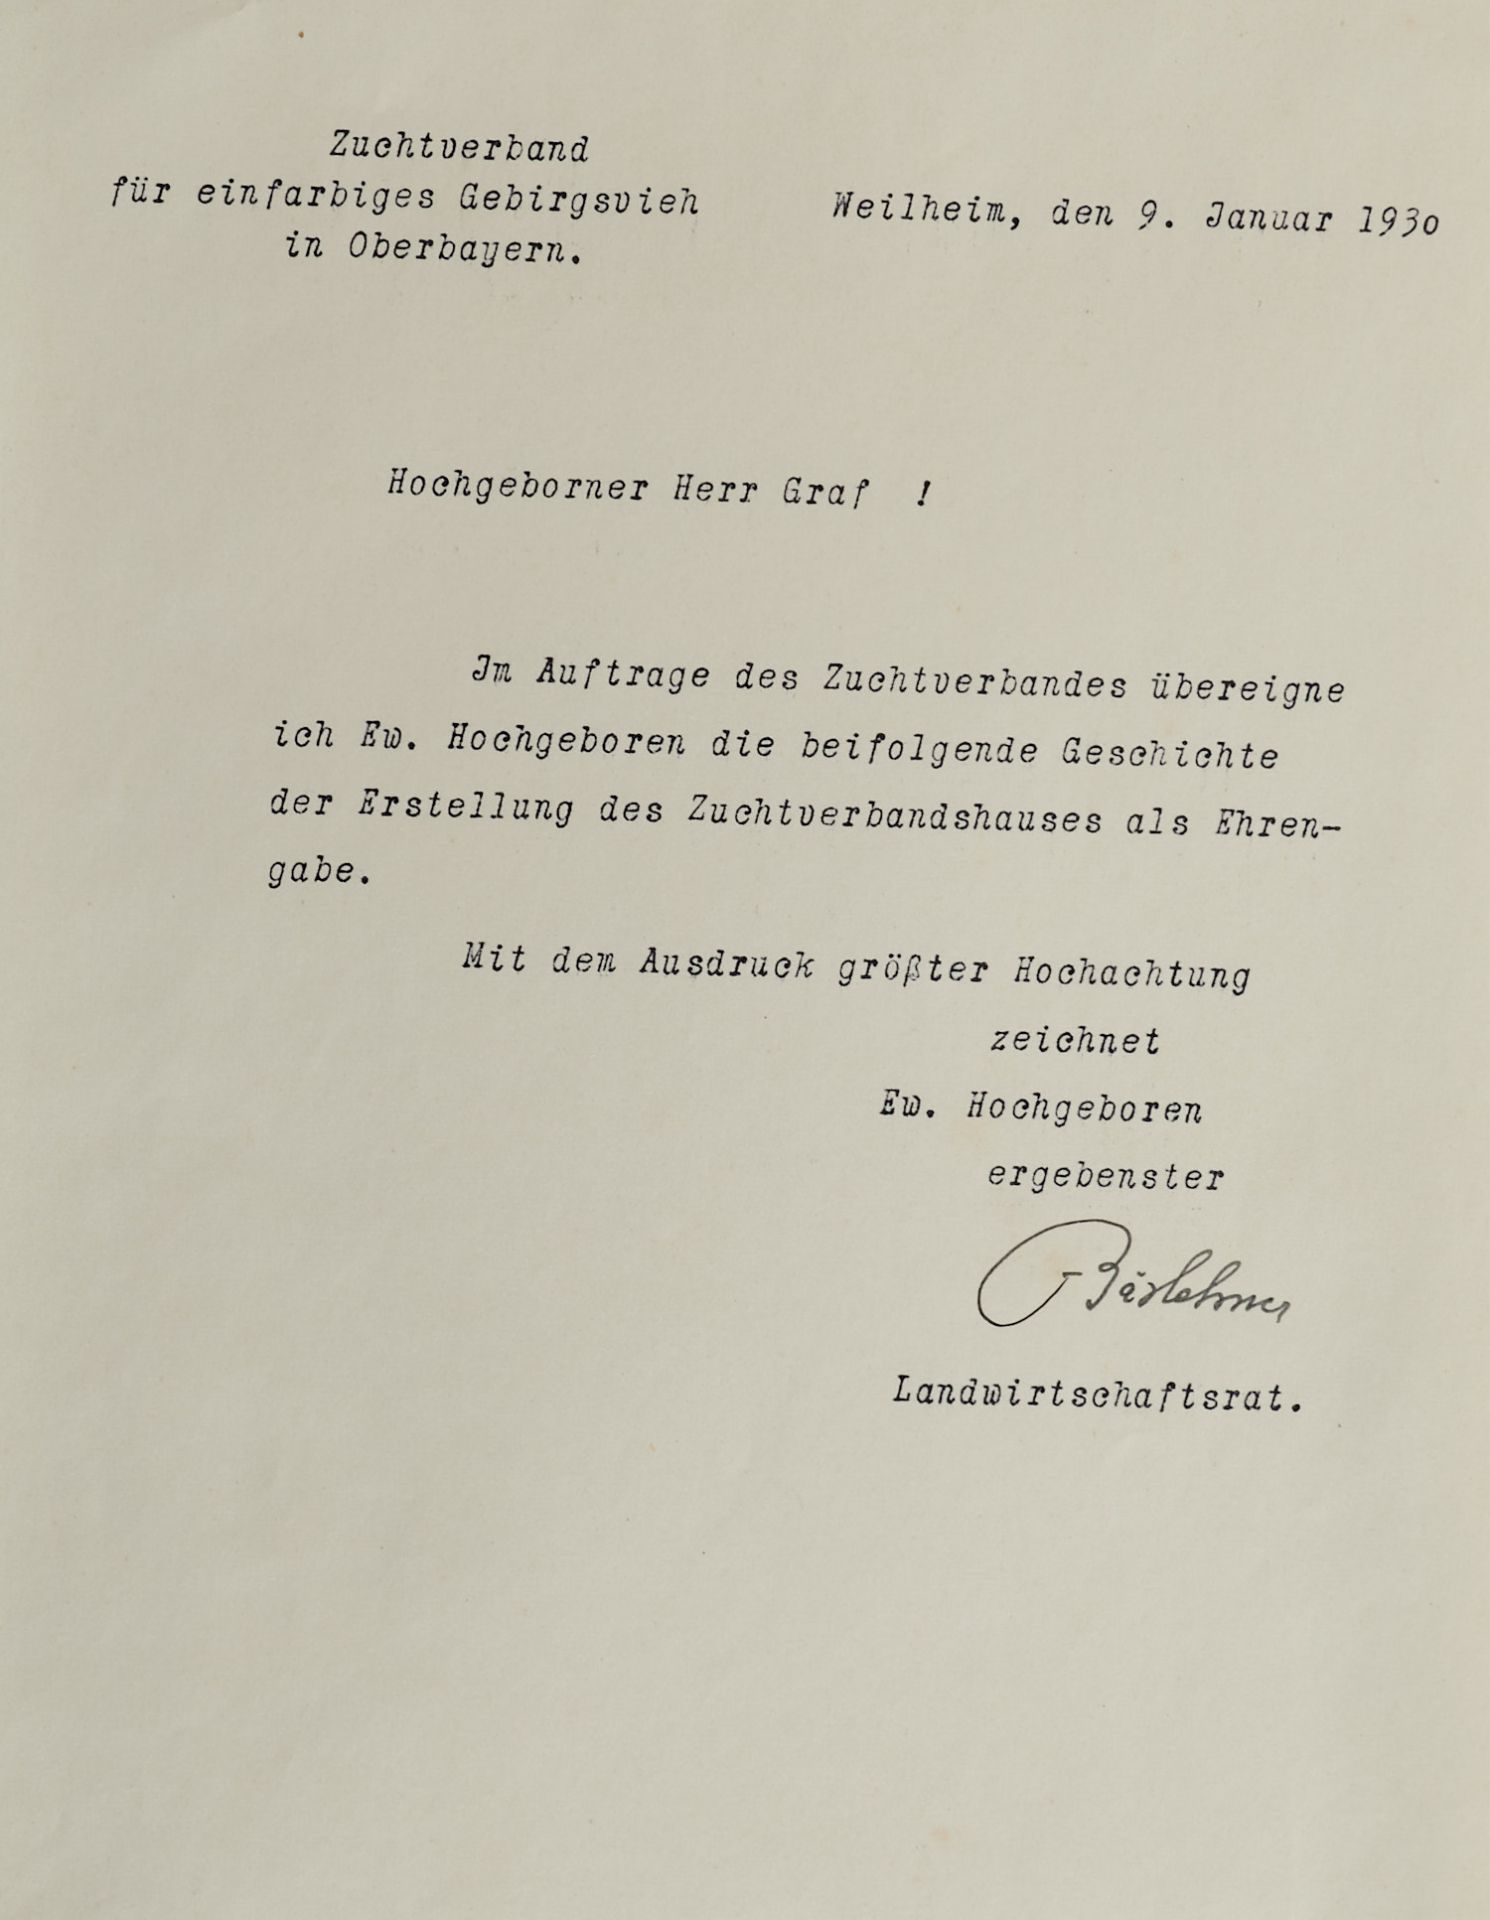 Der Hausbau des Zuchtverbandes für einfarbiges Gebirgsvieh in Oberbayern 1927 - Image 2 of 4